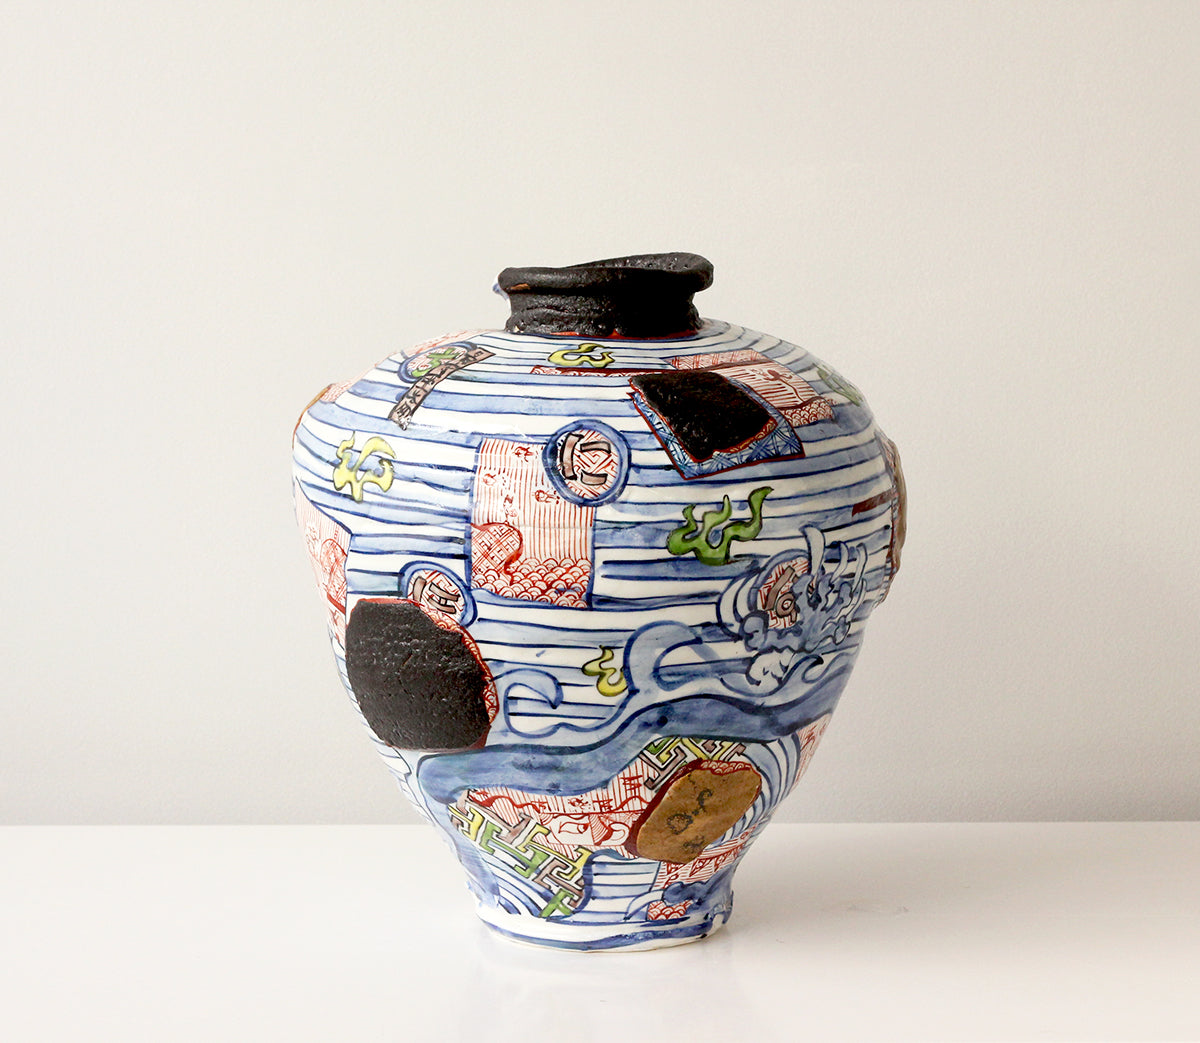 Yobitsugi Style Vase #4, 2019